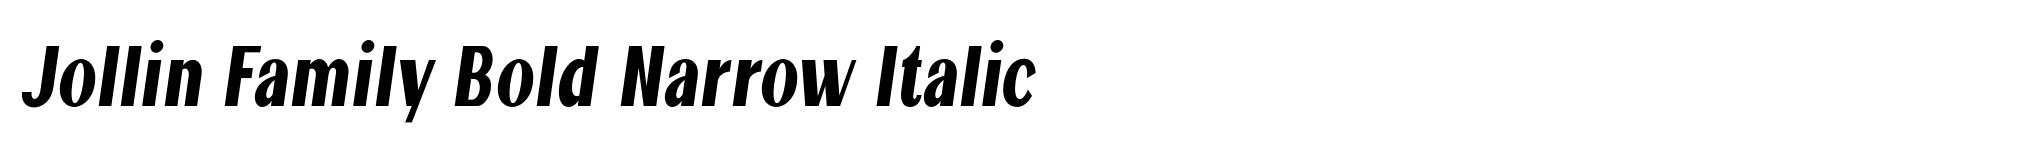 Jollin Family Bold Narrow Italic image